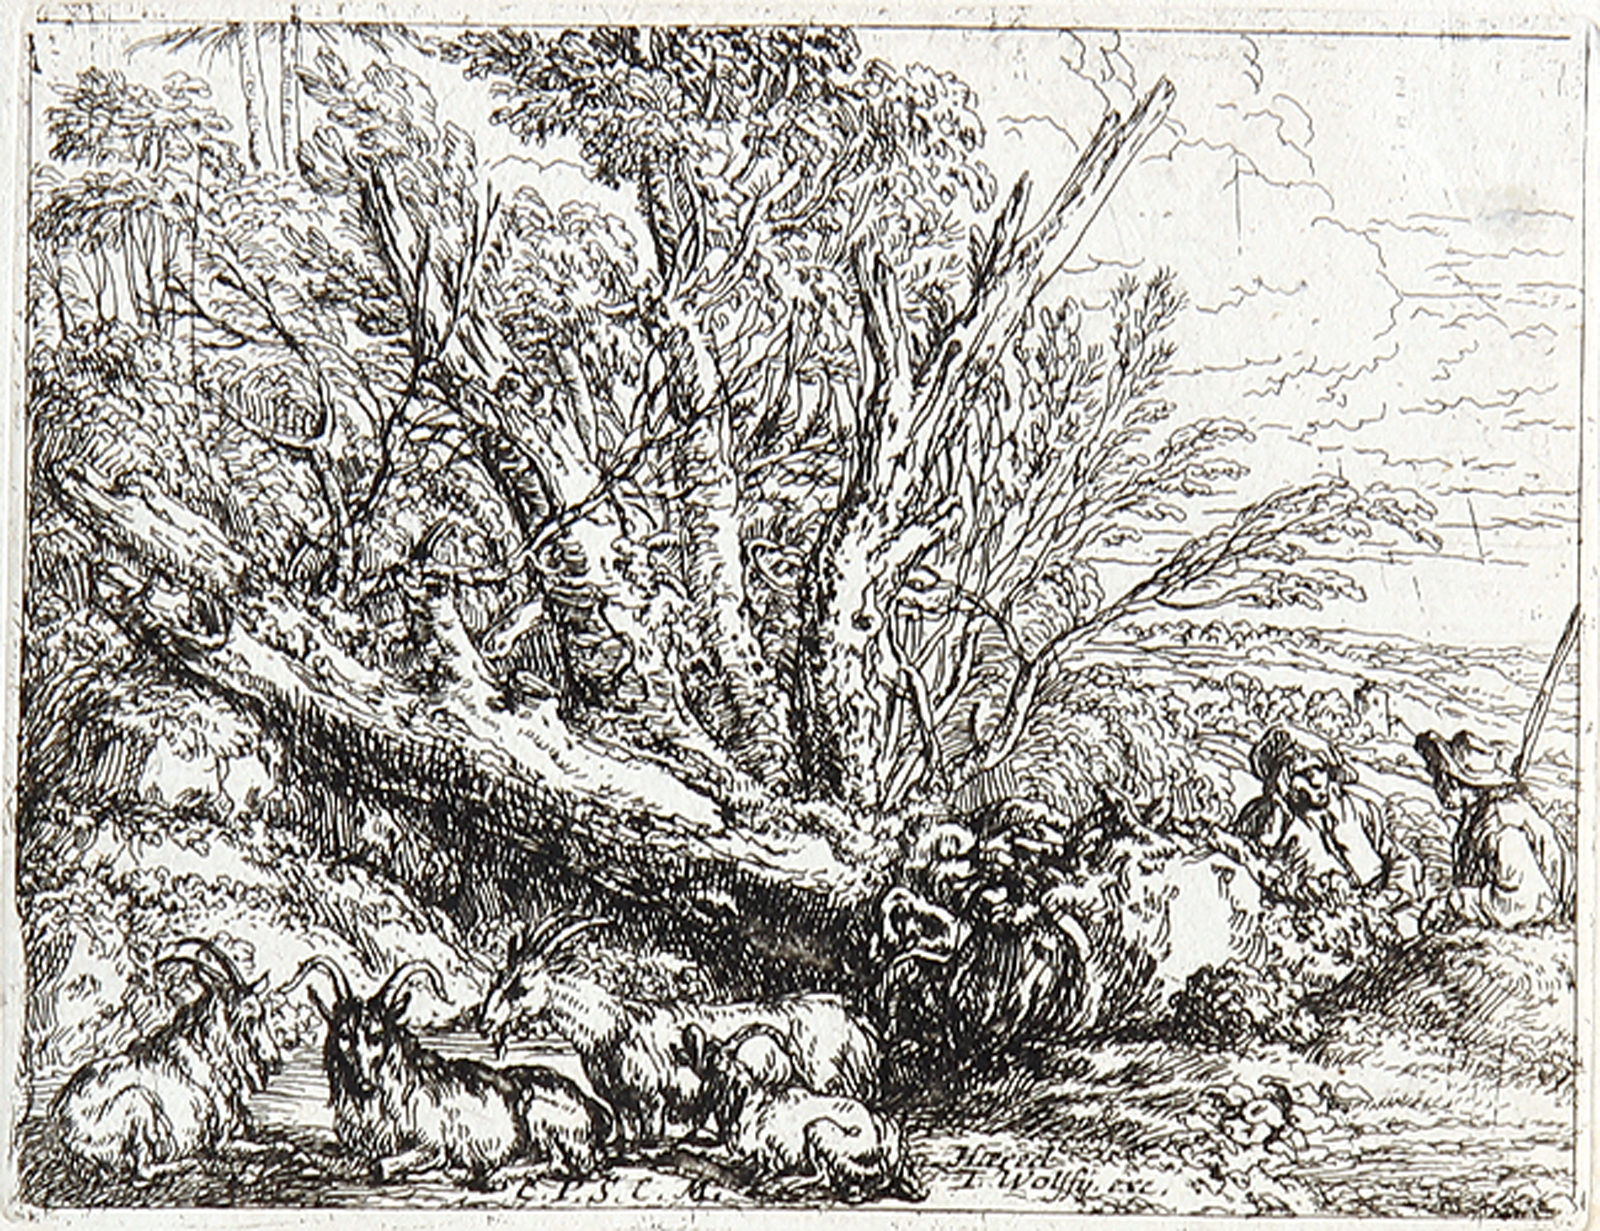 Der Hirte mit der Herde bei einer Ruine - Der aus dem Hut trinkende Hirte - Die ruhenden Ziegenhirten bei dem umgestürztem Baum.